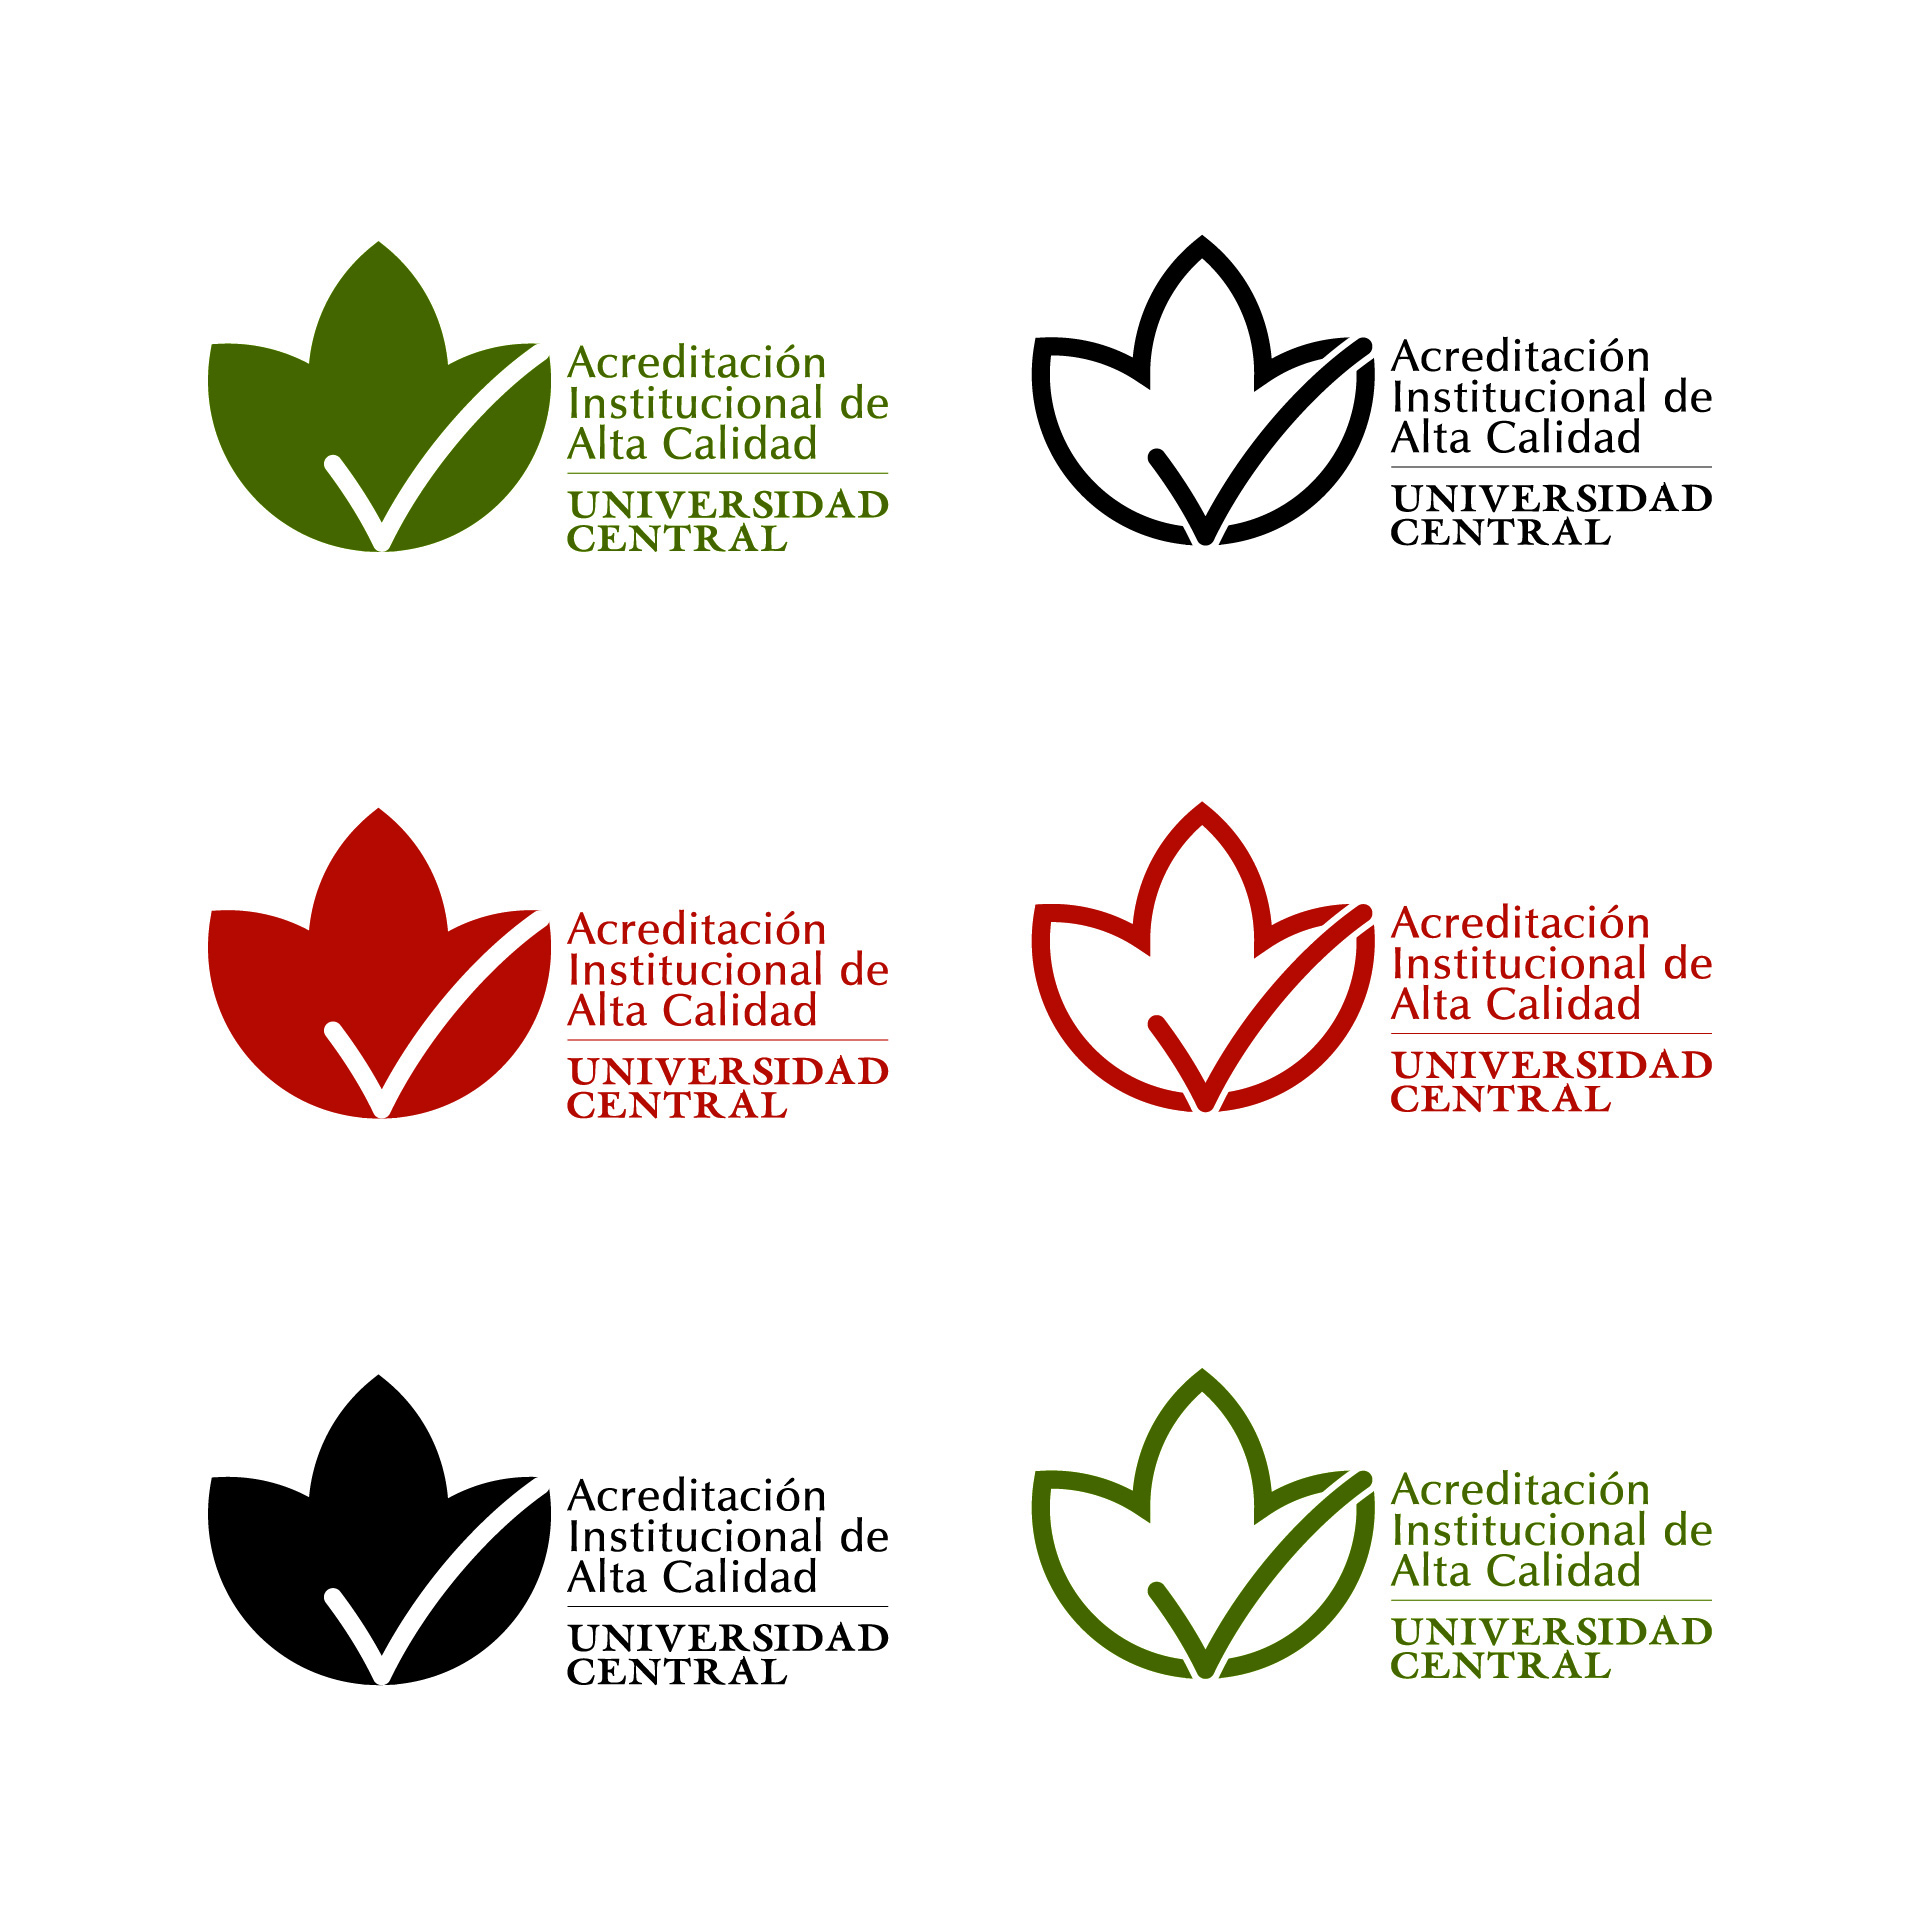 Diseño de Identidad Visual y Logotipo para la marca Acreditación Institucional de Alta Calidad - Universidad Central